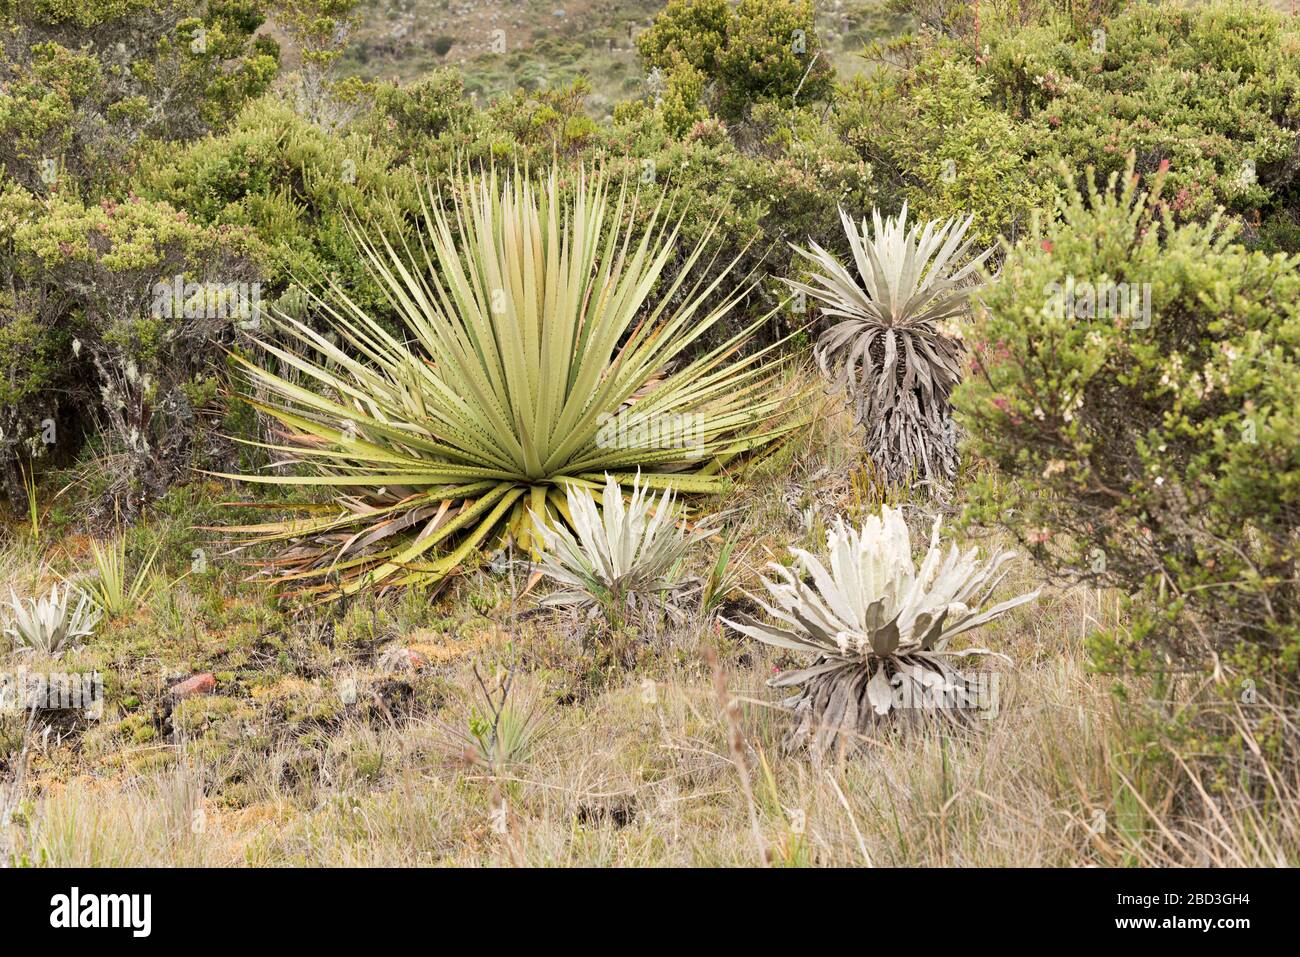 Parco Nazionale di Chingaza, Colombia. Moor paesaggio: Vegetazione tipica del paramo, tra cui un puya goudotiana e fragilejones, espeletia Foto Stock